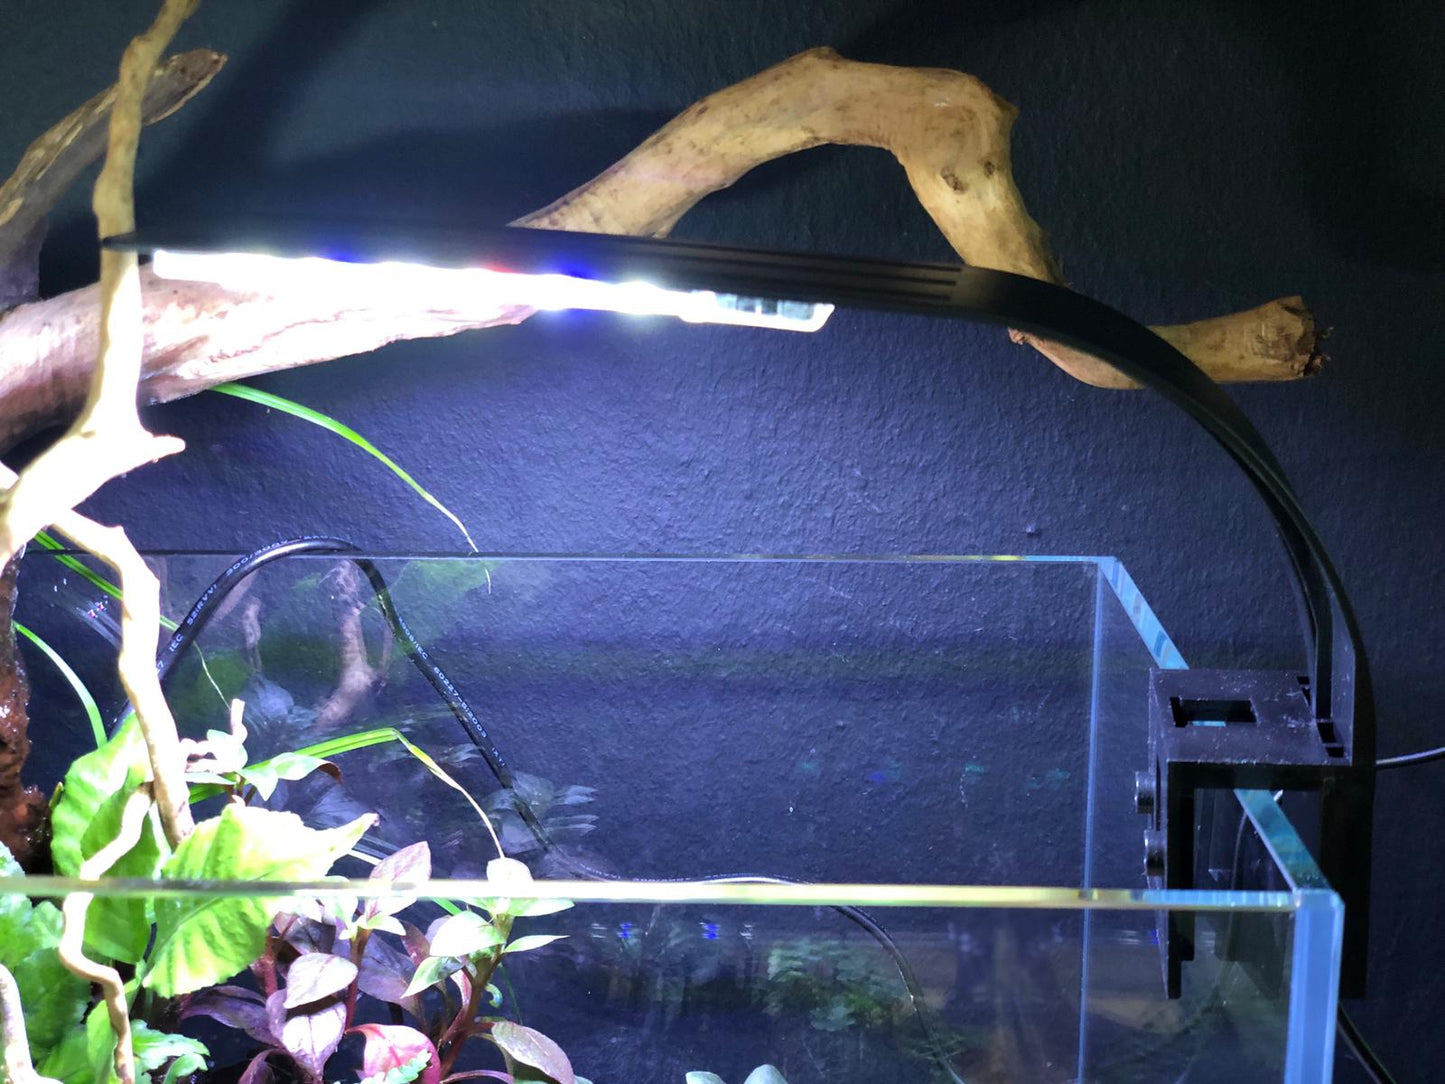 PF Lux C+ Mini Aquarium Clip Led Lamp (30cm)